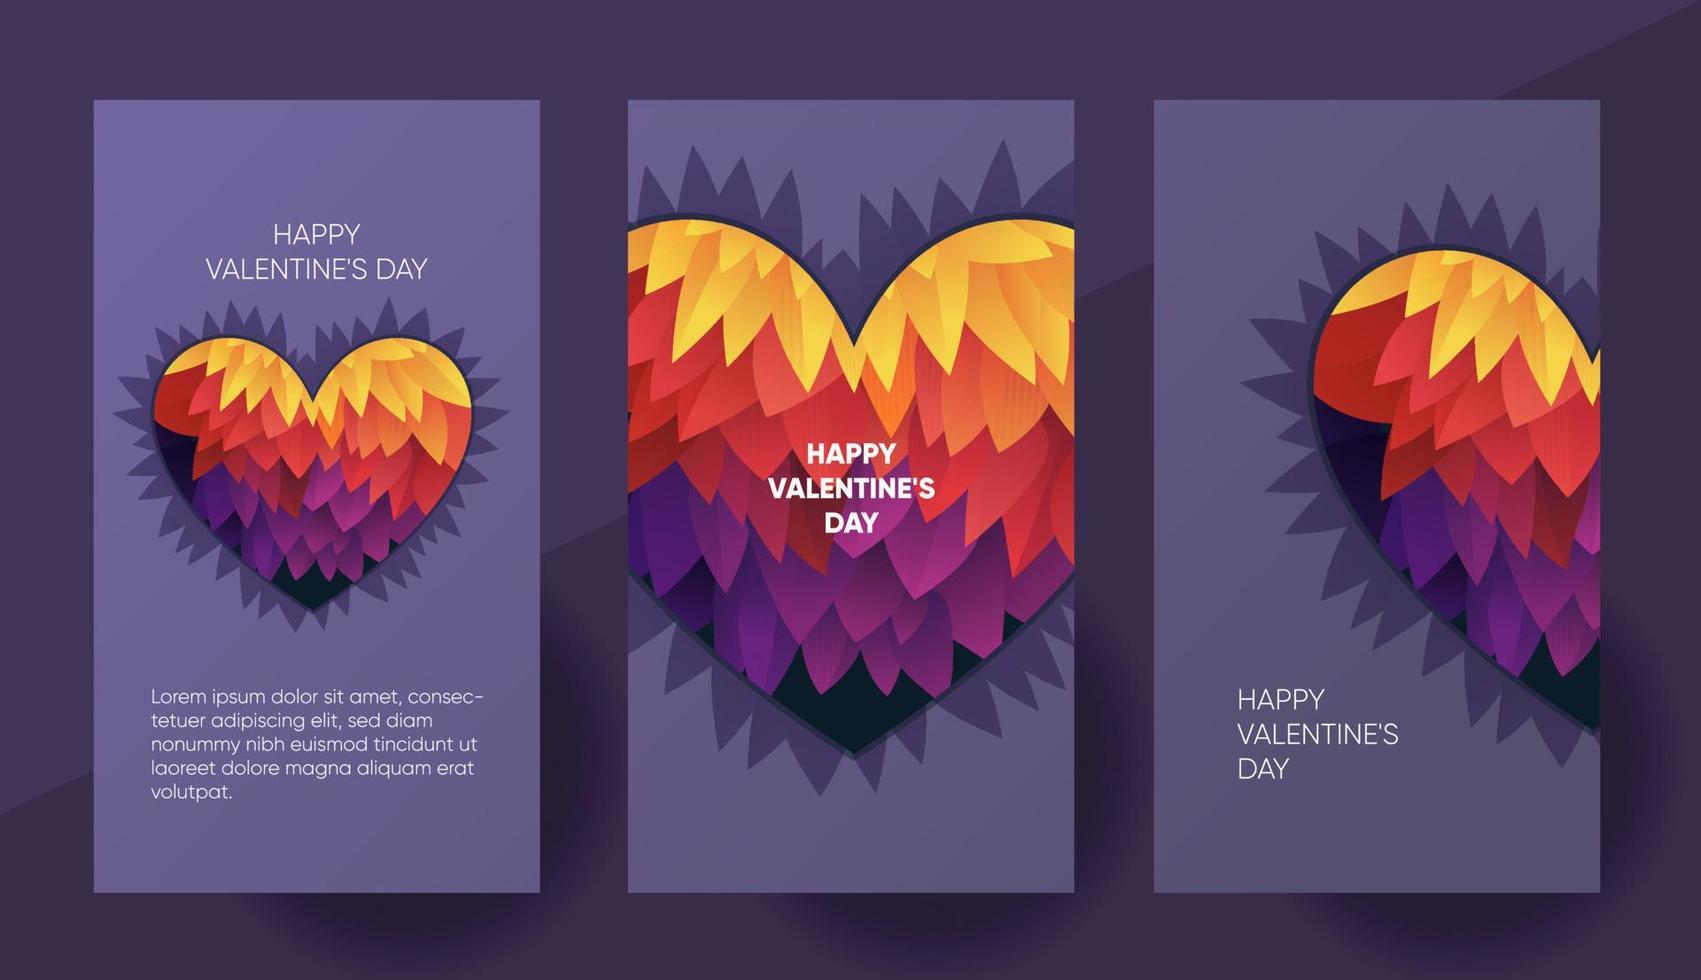 Happy Valentines Day Vektorbanner, Vorlage für Social Media-Geschichten mit einem schönen bunten Herzen. vektor